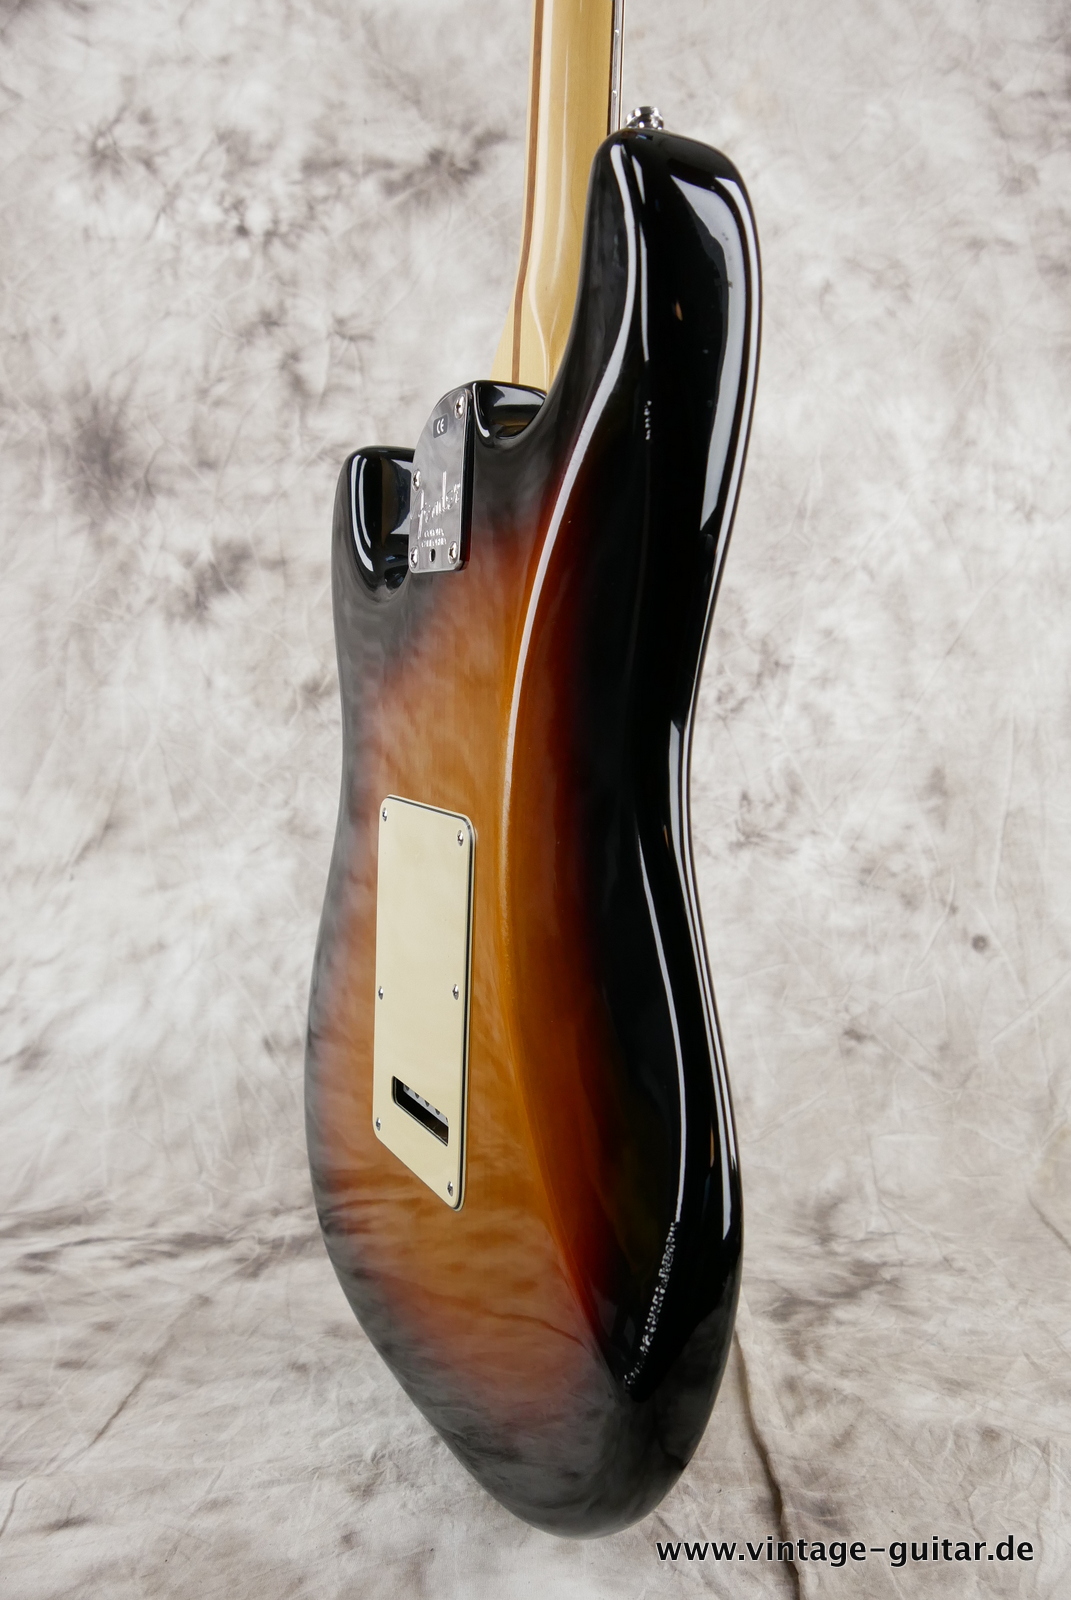 img/vintage/5280/Fender_Startocaster_American_Deluxe_sunburst_samarium-cobalt-noiseless_tremolo_2005-012.JPG